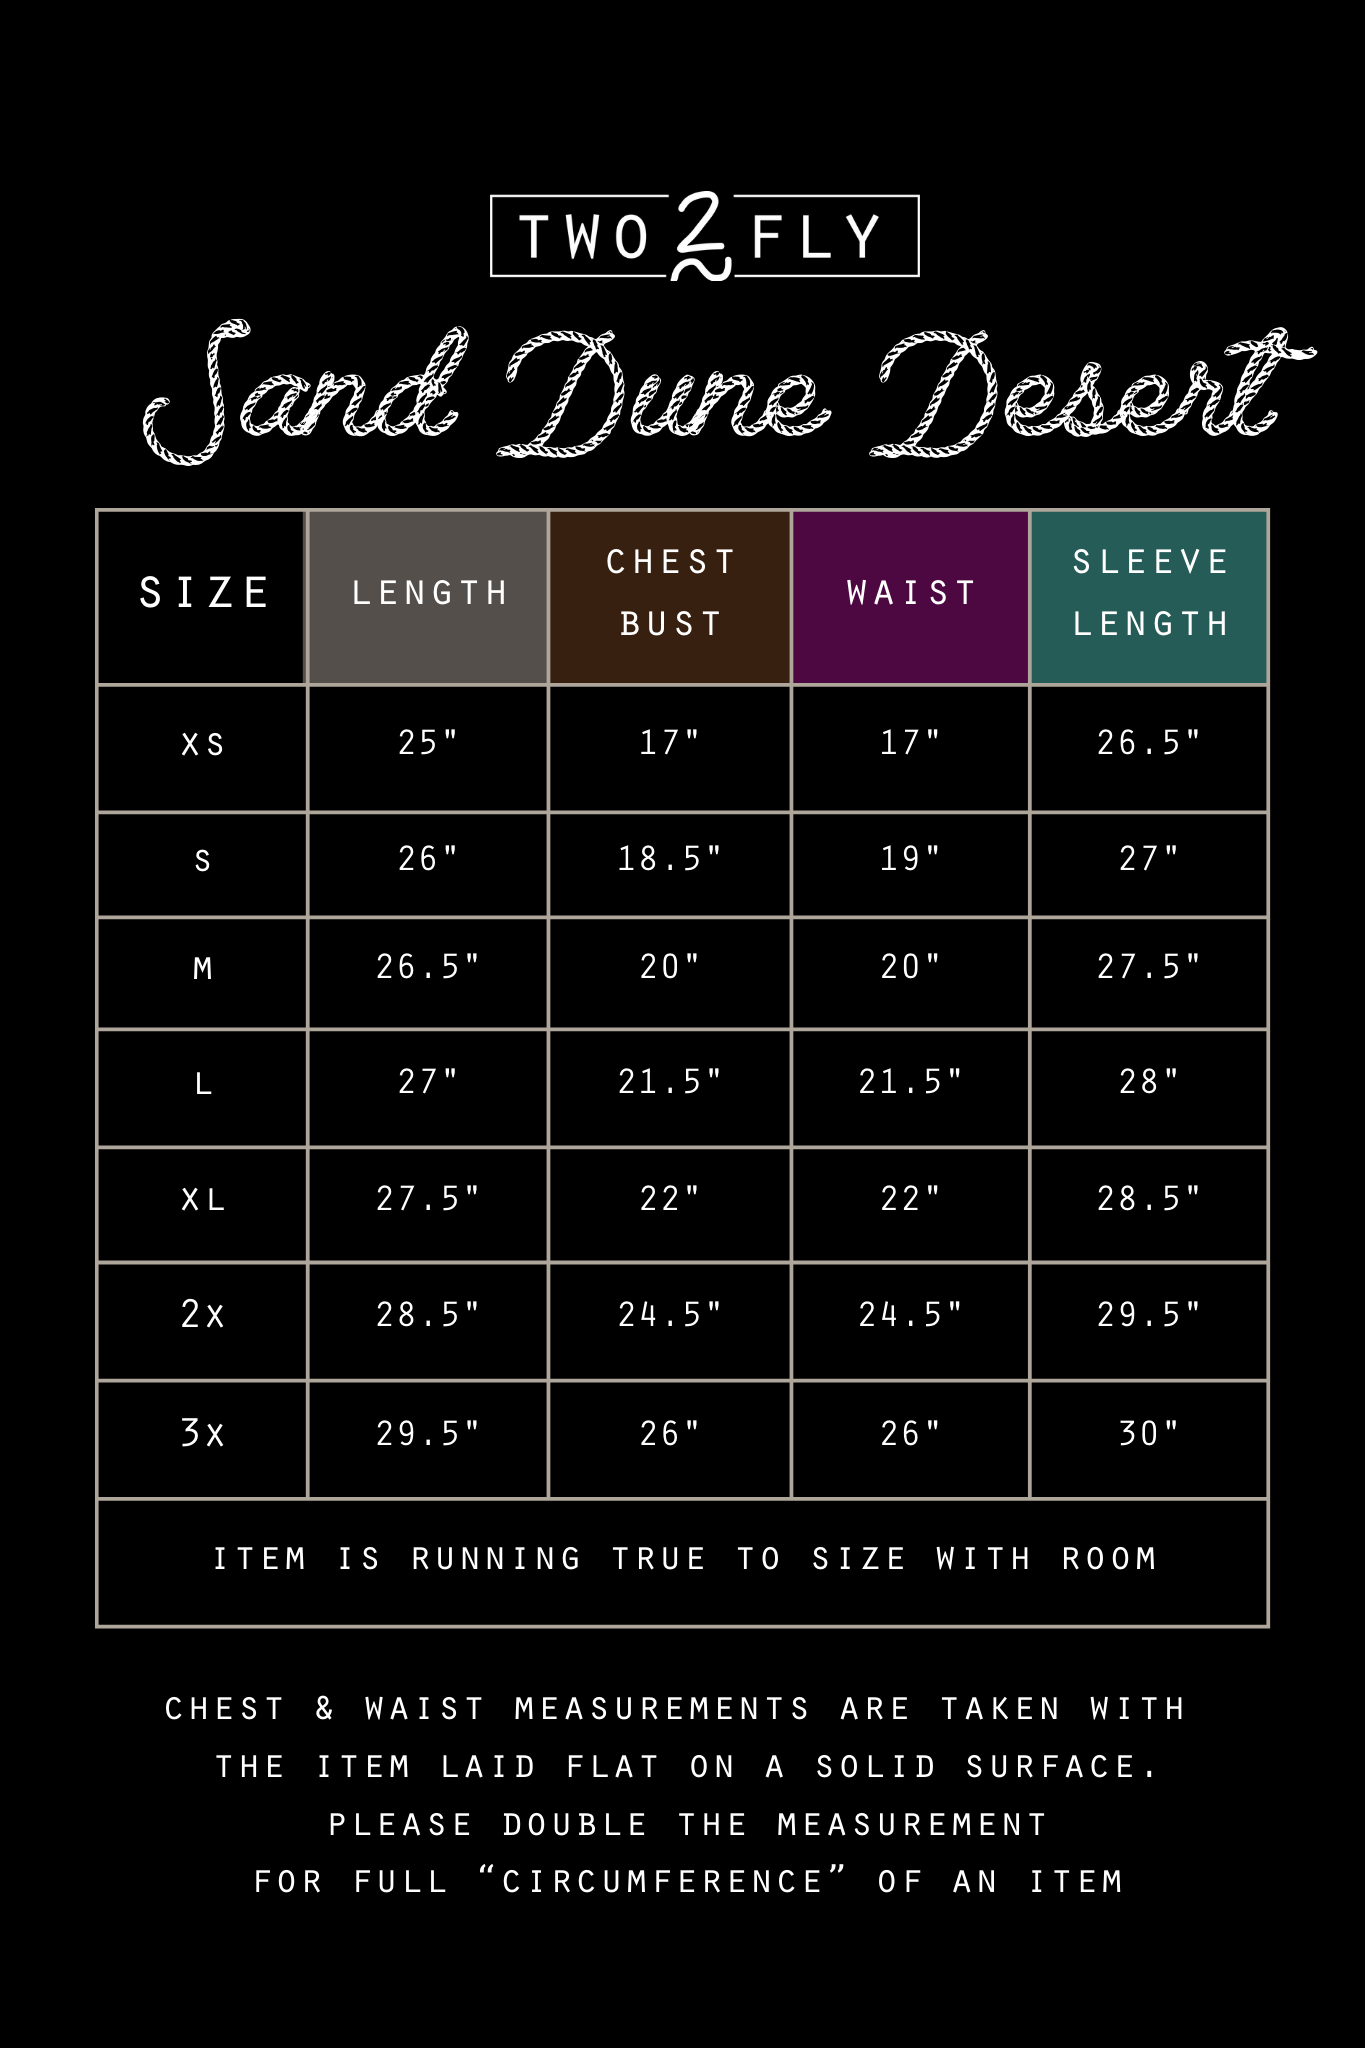 Sand Dune Desert Mesh Long Sleeve- Size Small